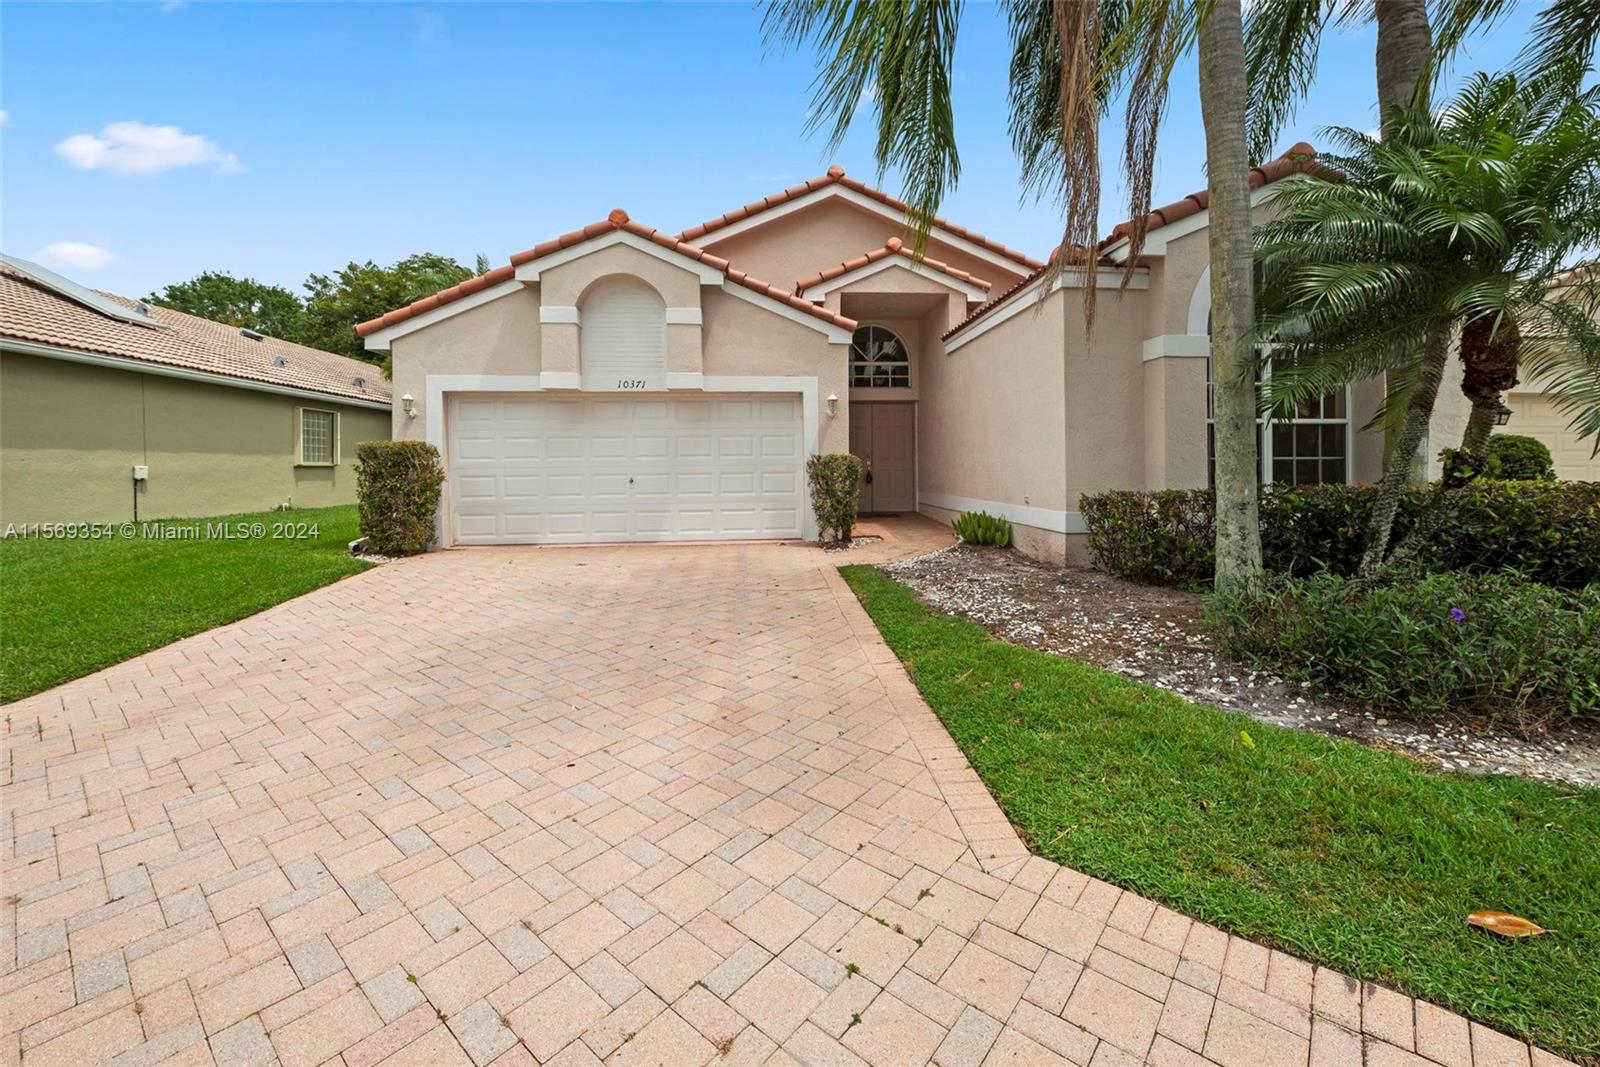 Property for Sale at 10371 E Utopia Cir E Cir, Boynton Beach, Palm Beach County, Florida - Bedrooms: 3 
Bathrooms: 2  - $464,900